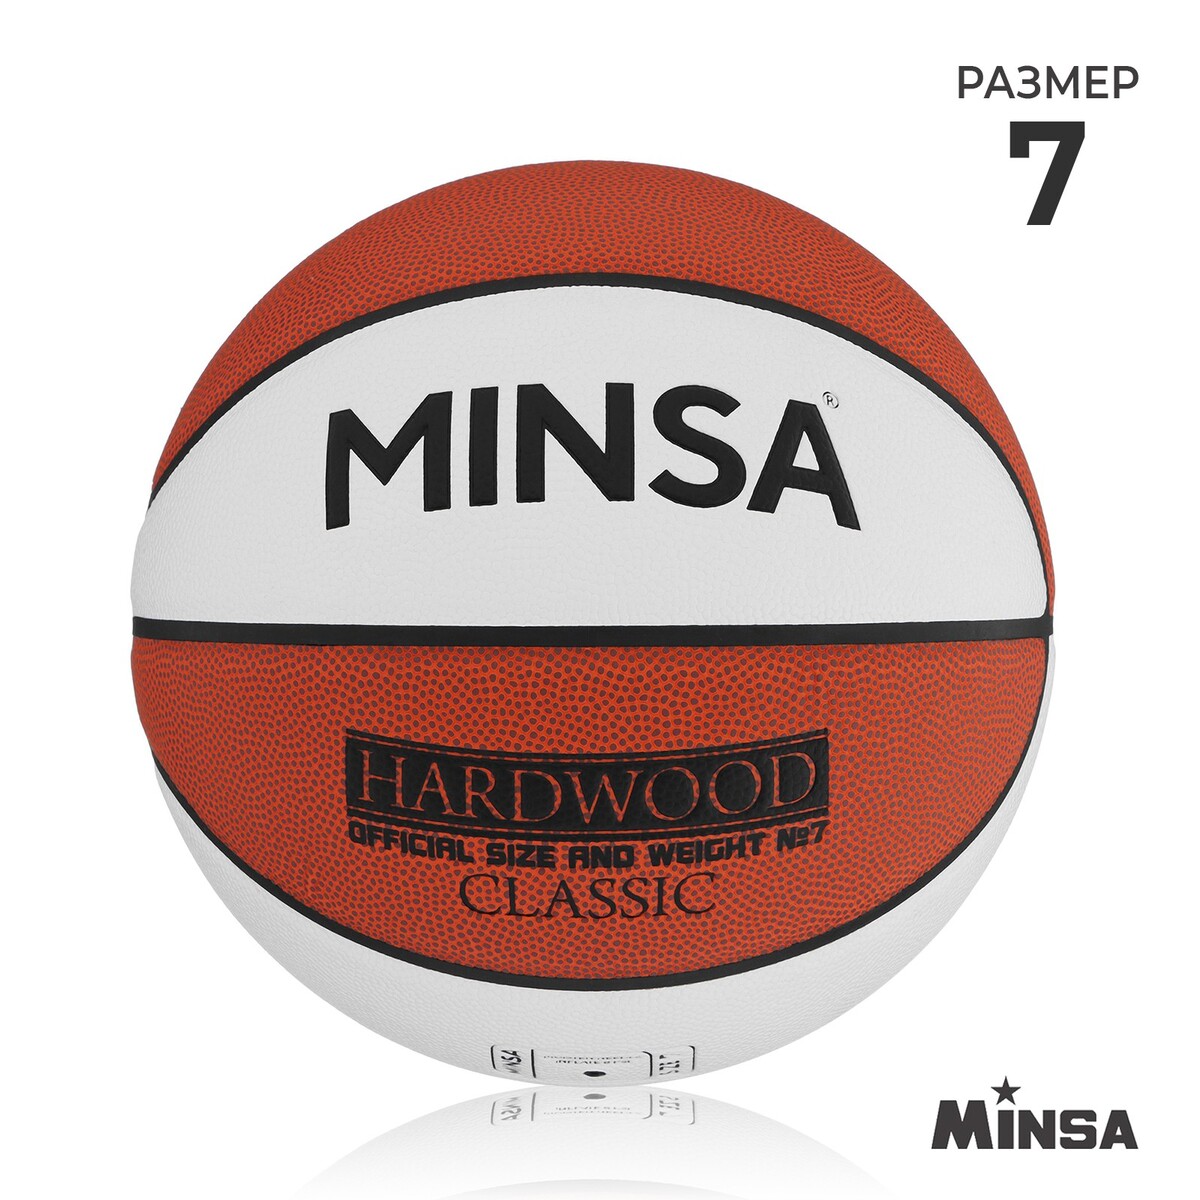 фото Баскетбольный мяч minsa hardwood classic, pu, клееный, 8 панелей, р. 7